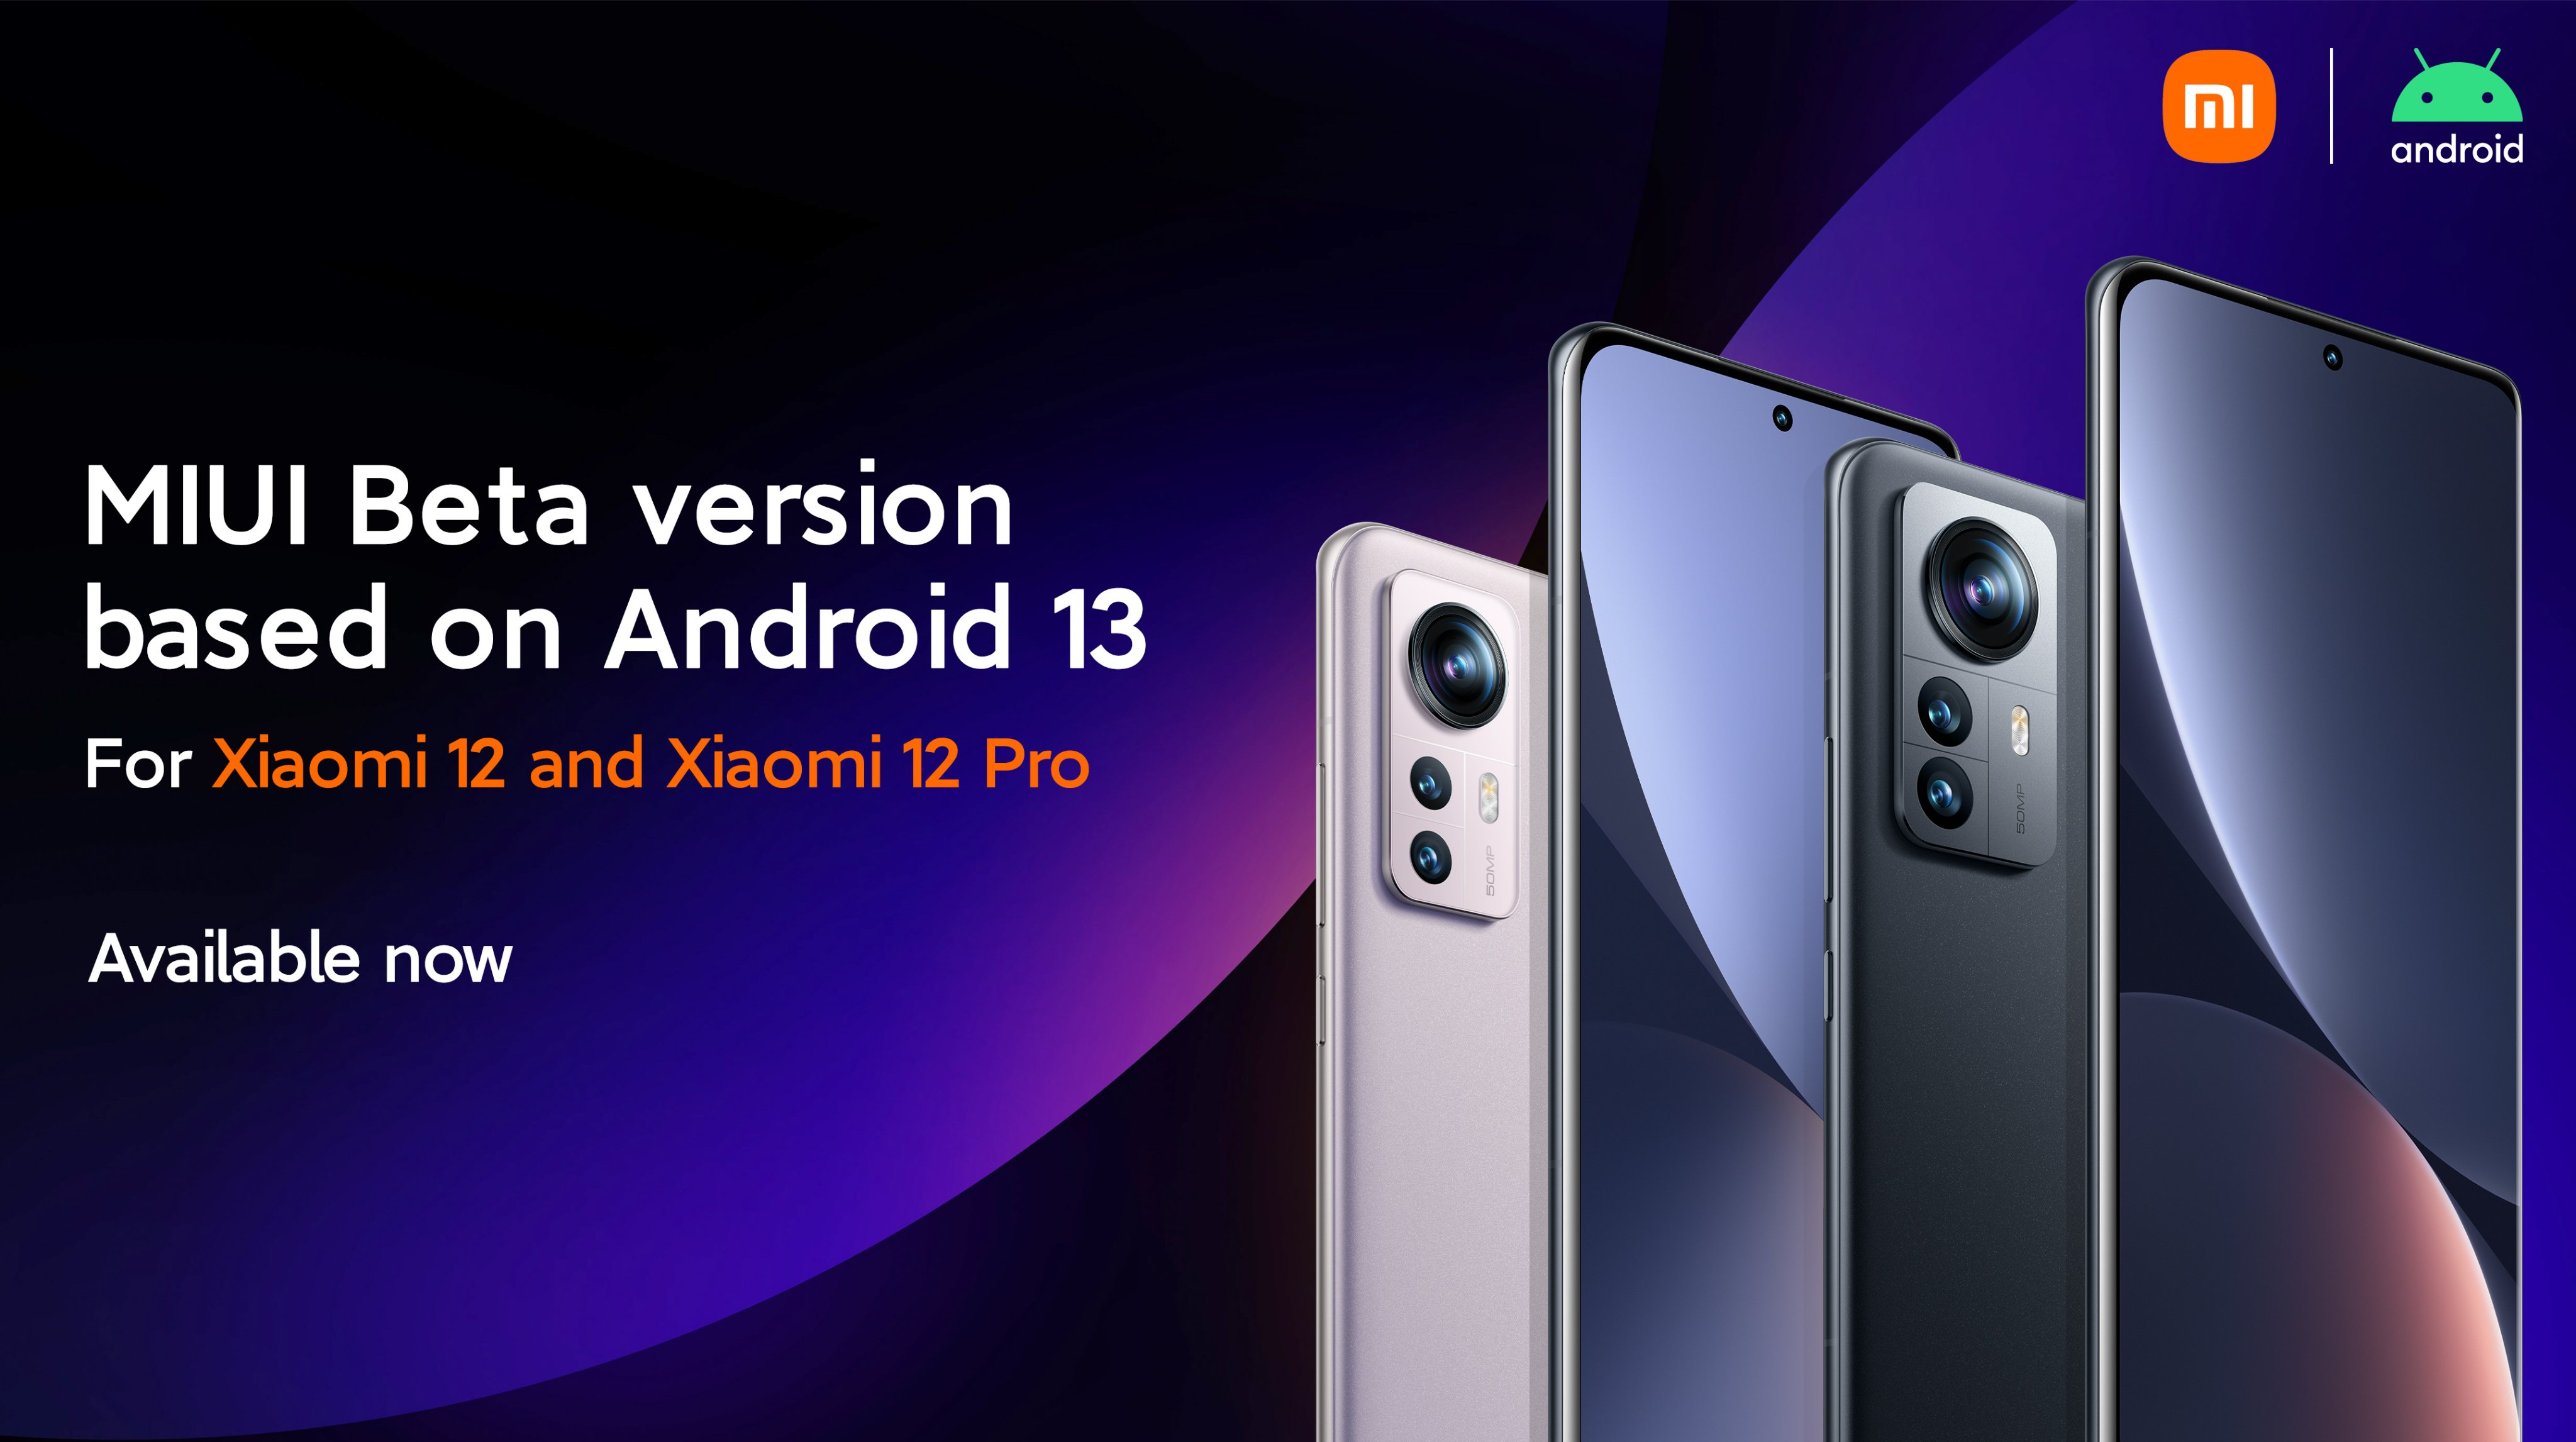 Xiaomi 12 e Xiaomi 12 Pro ricevono MIUI 13 beta basata su Android 13